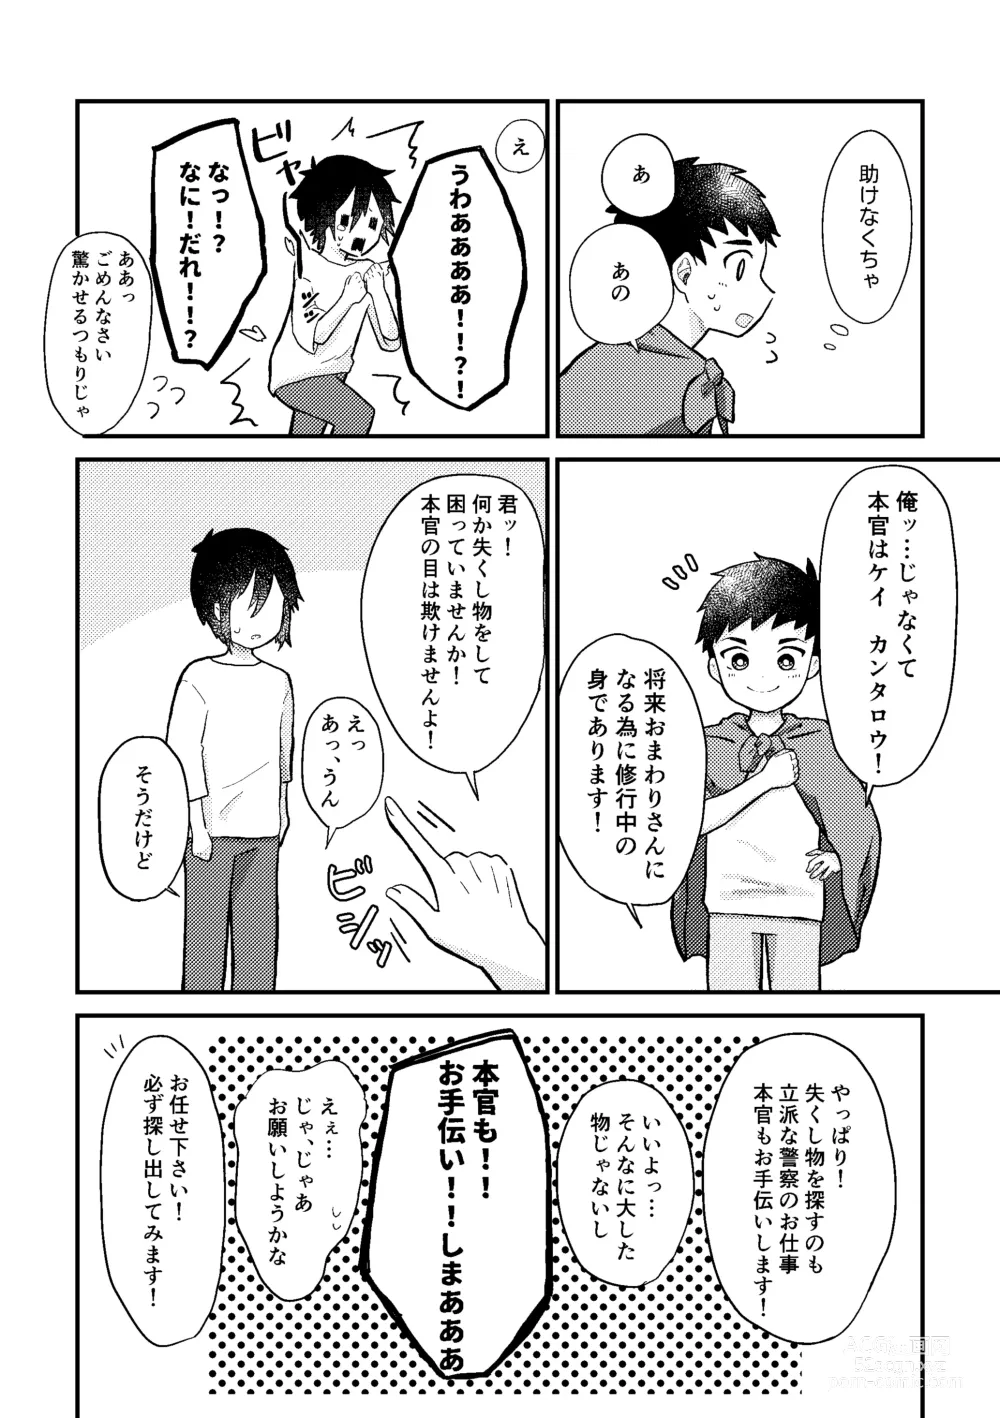 Page 9 of doujinshi Saigo no Natsuyasumi